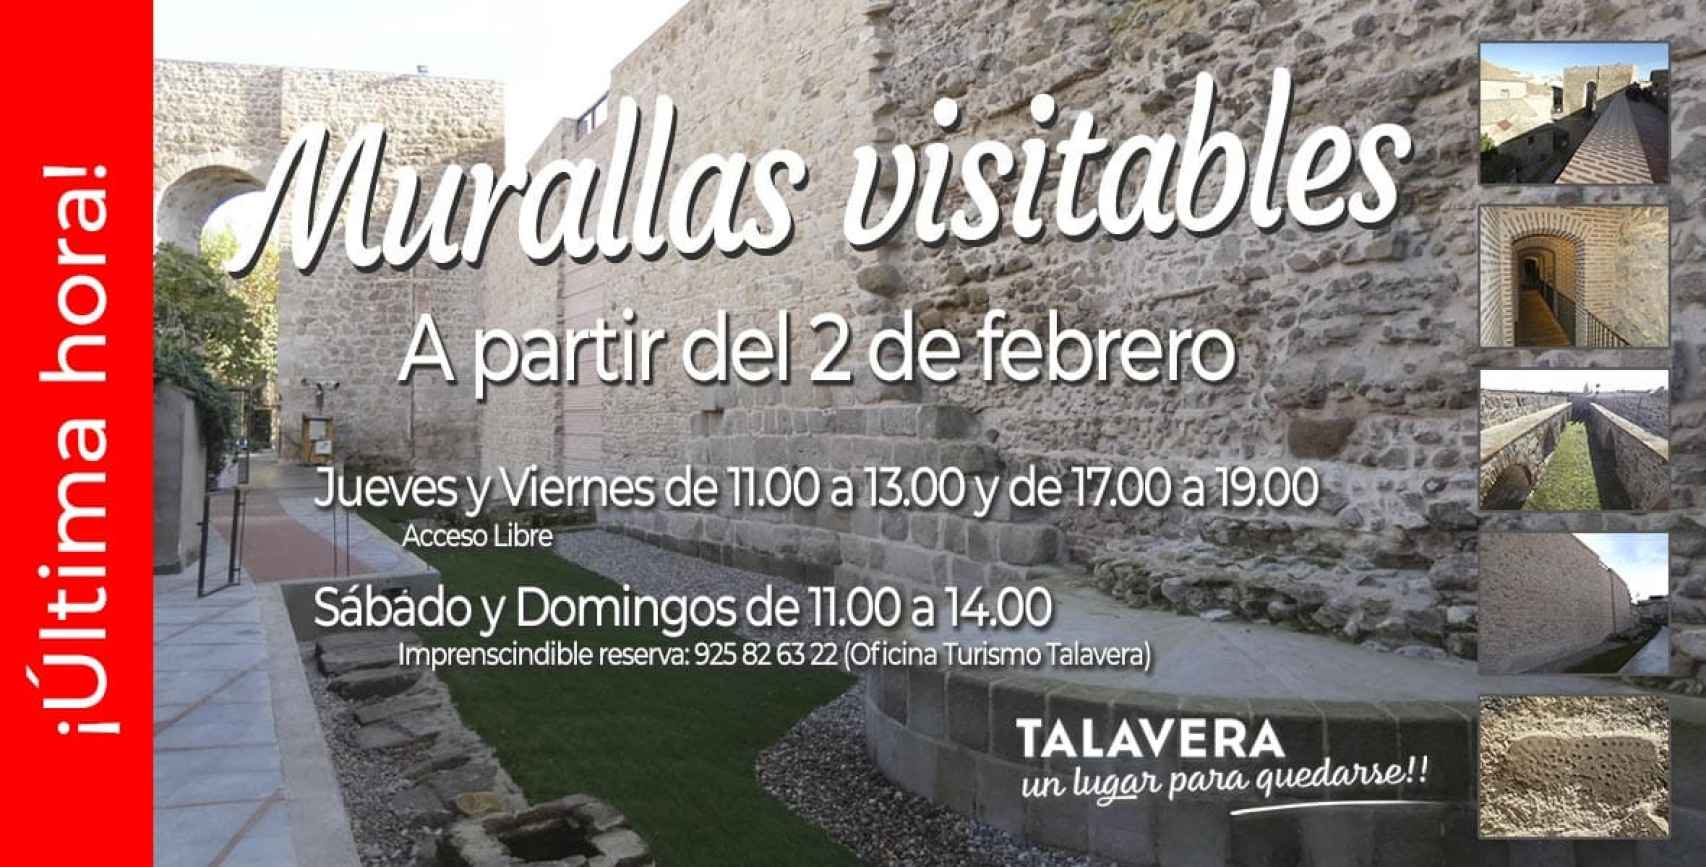 'Murallas visitables' en Talavera. Foto: Ayuntamiento de Talavera.